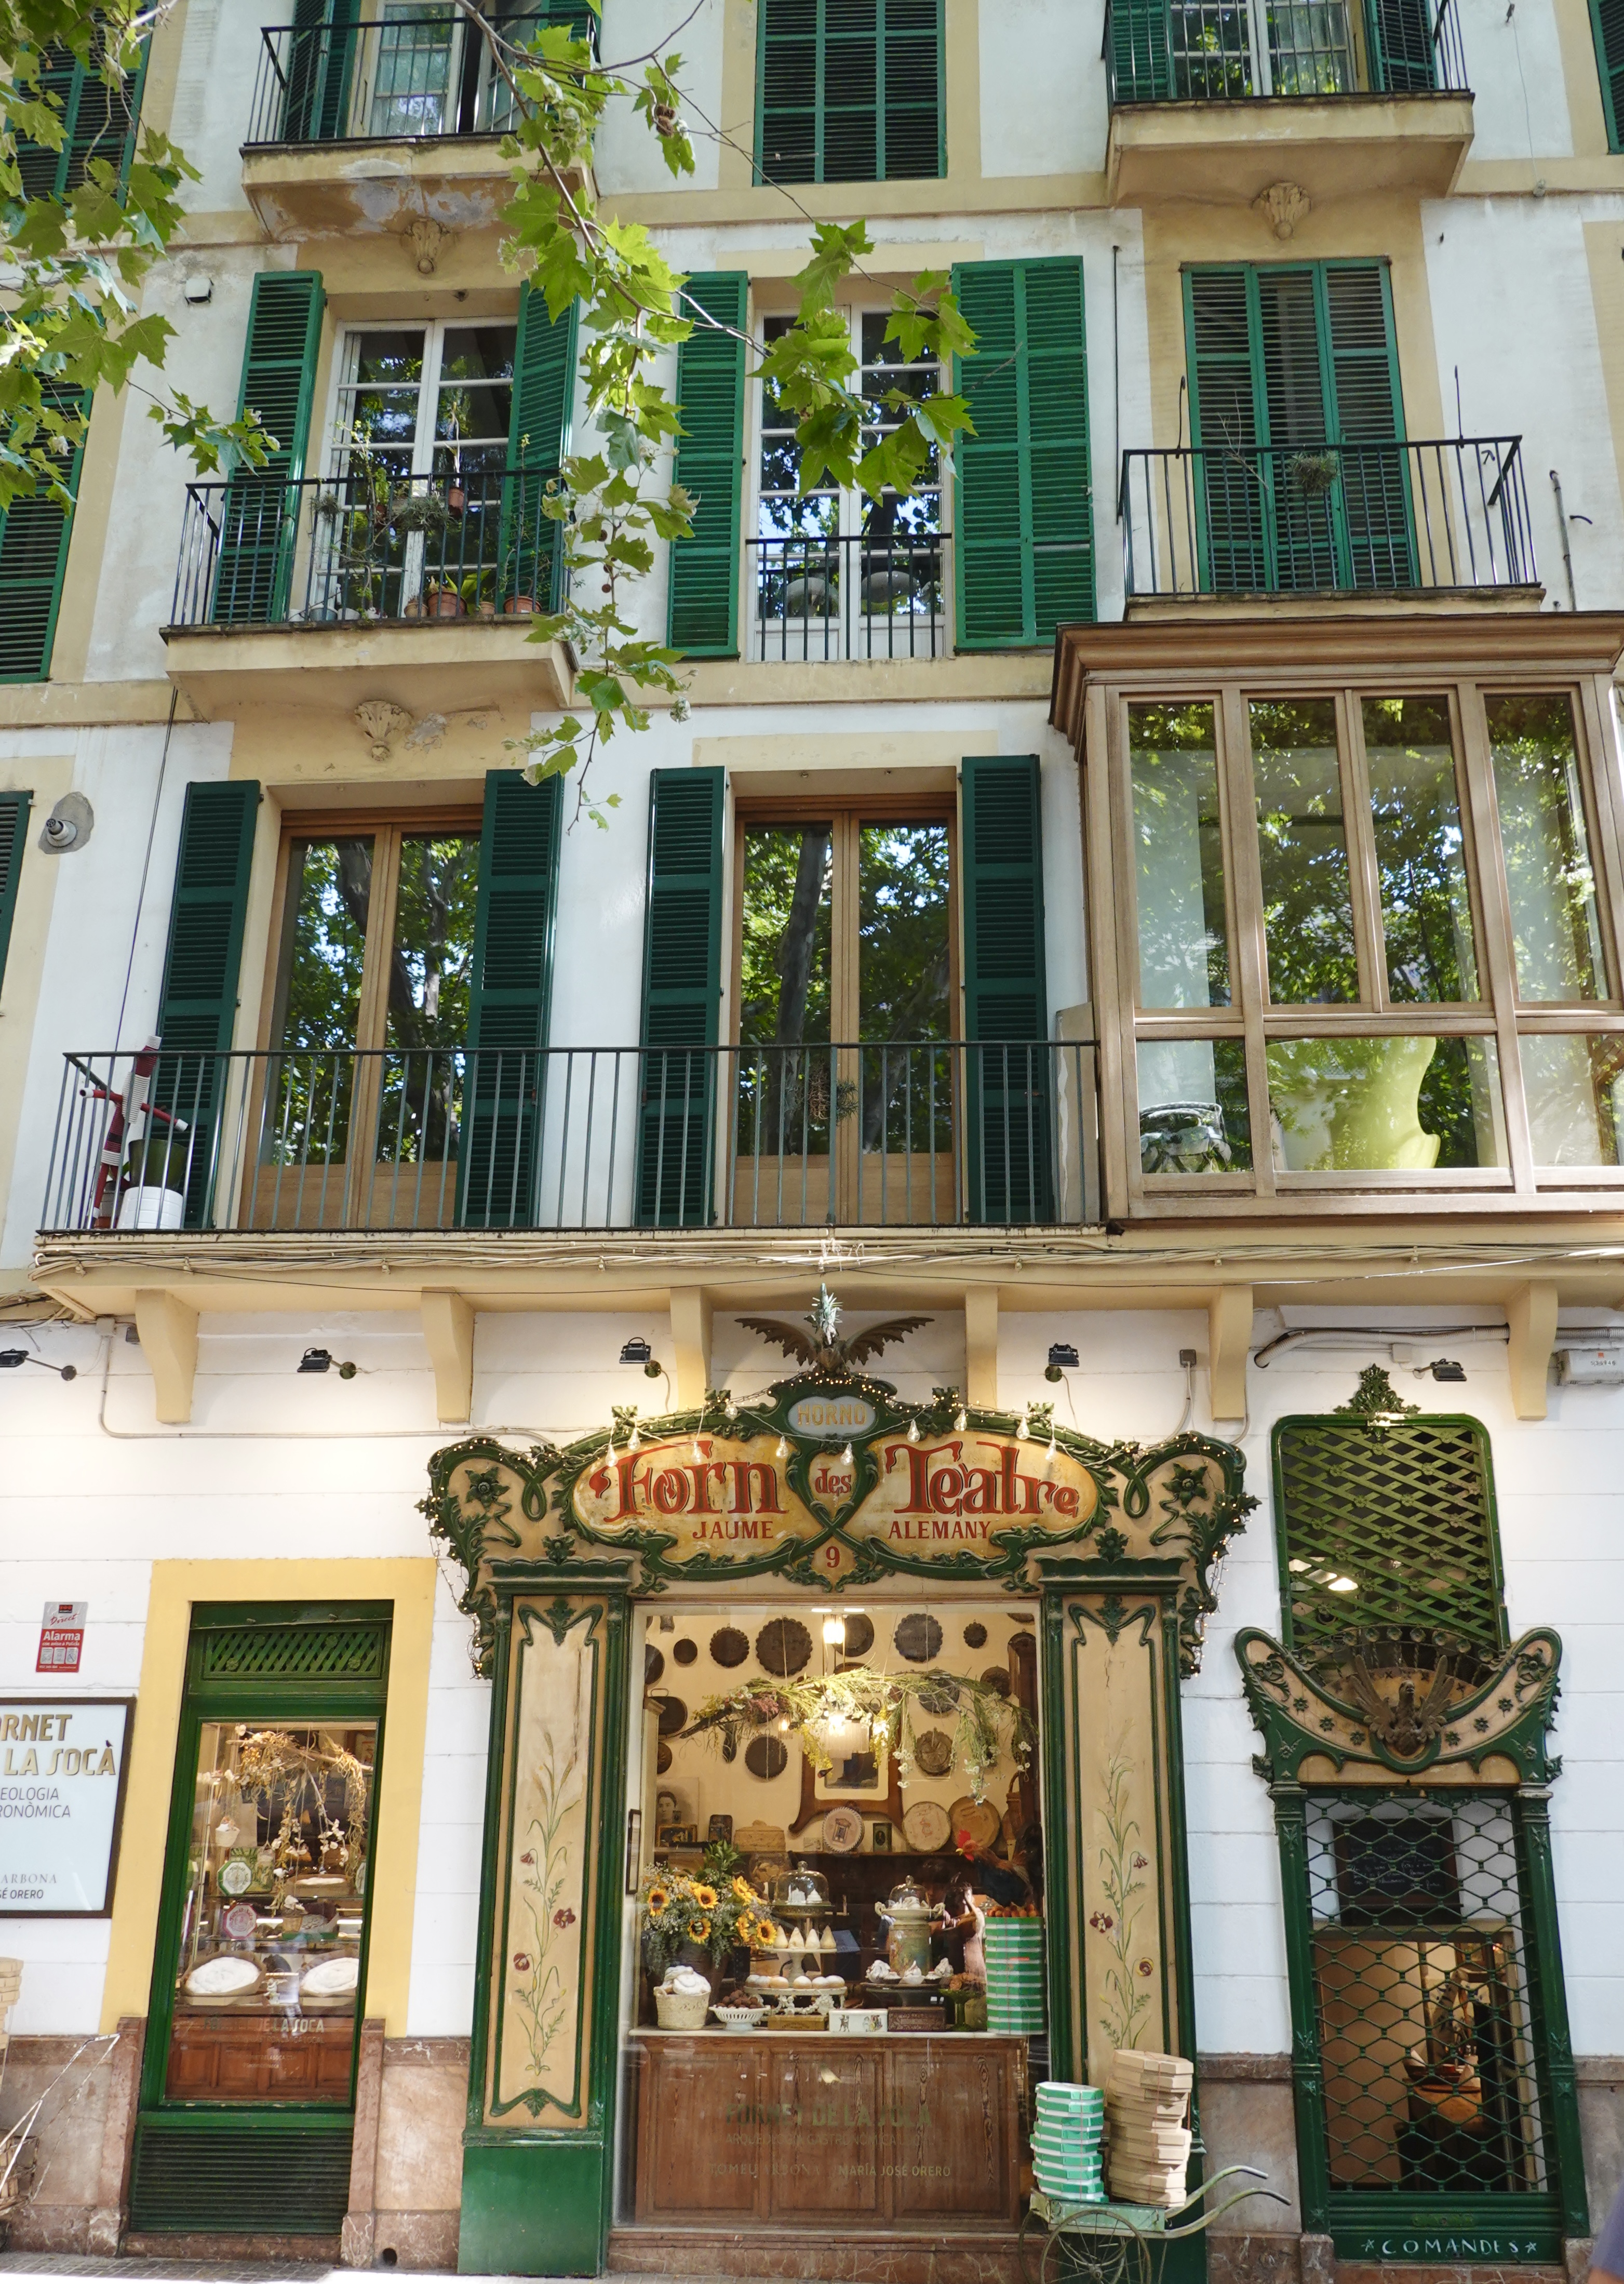 Fornet de la Soca - where you will find the best pastries in Palma, Mallorca